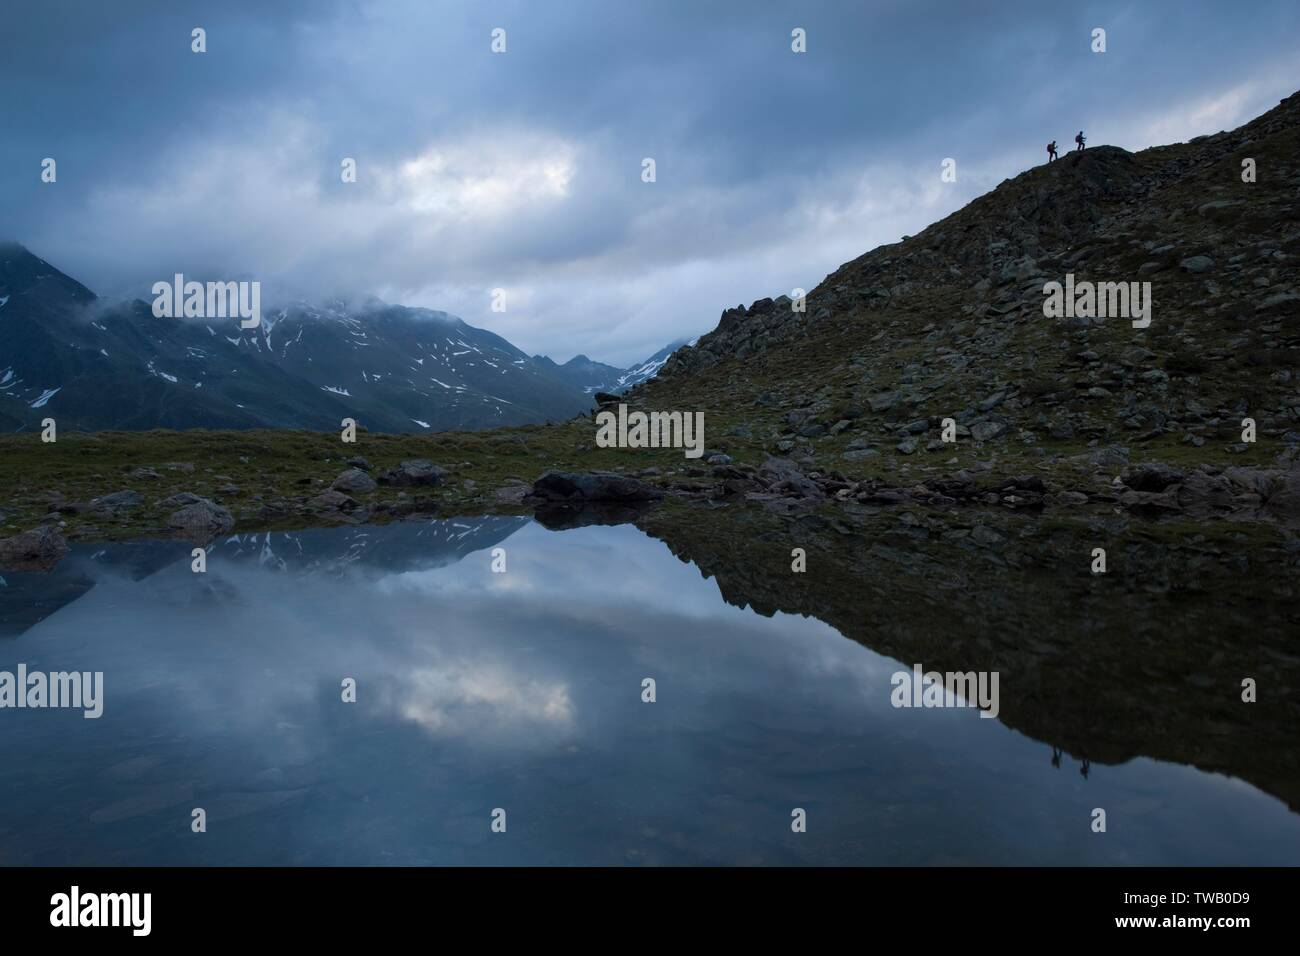 Austria, Tyrol, Stubai Alps, lake. Stock Photo